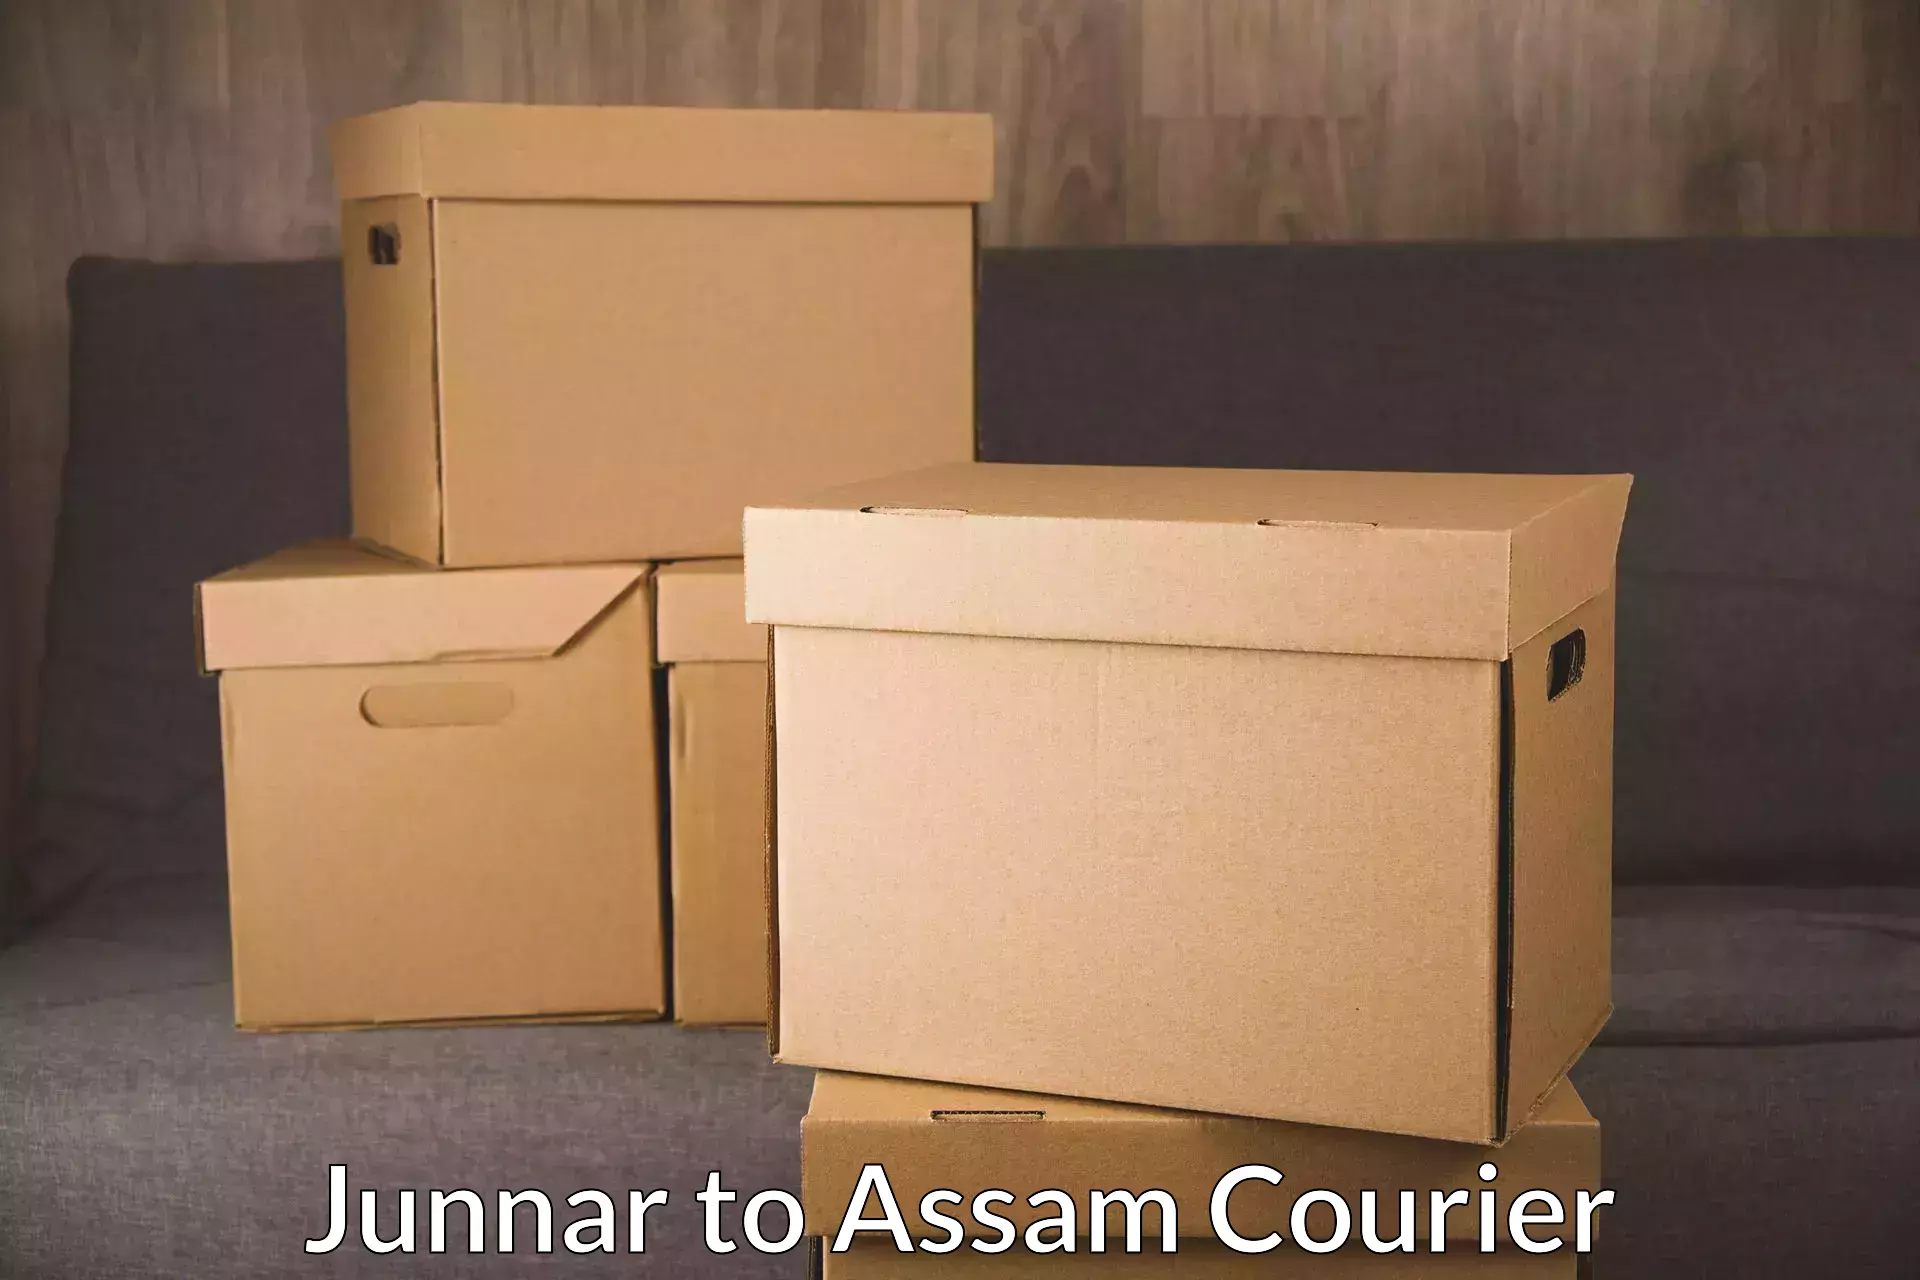 Express postal services Junnar to Assam